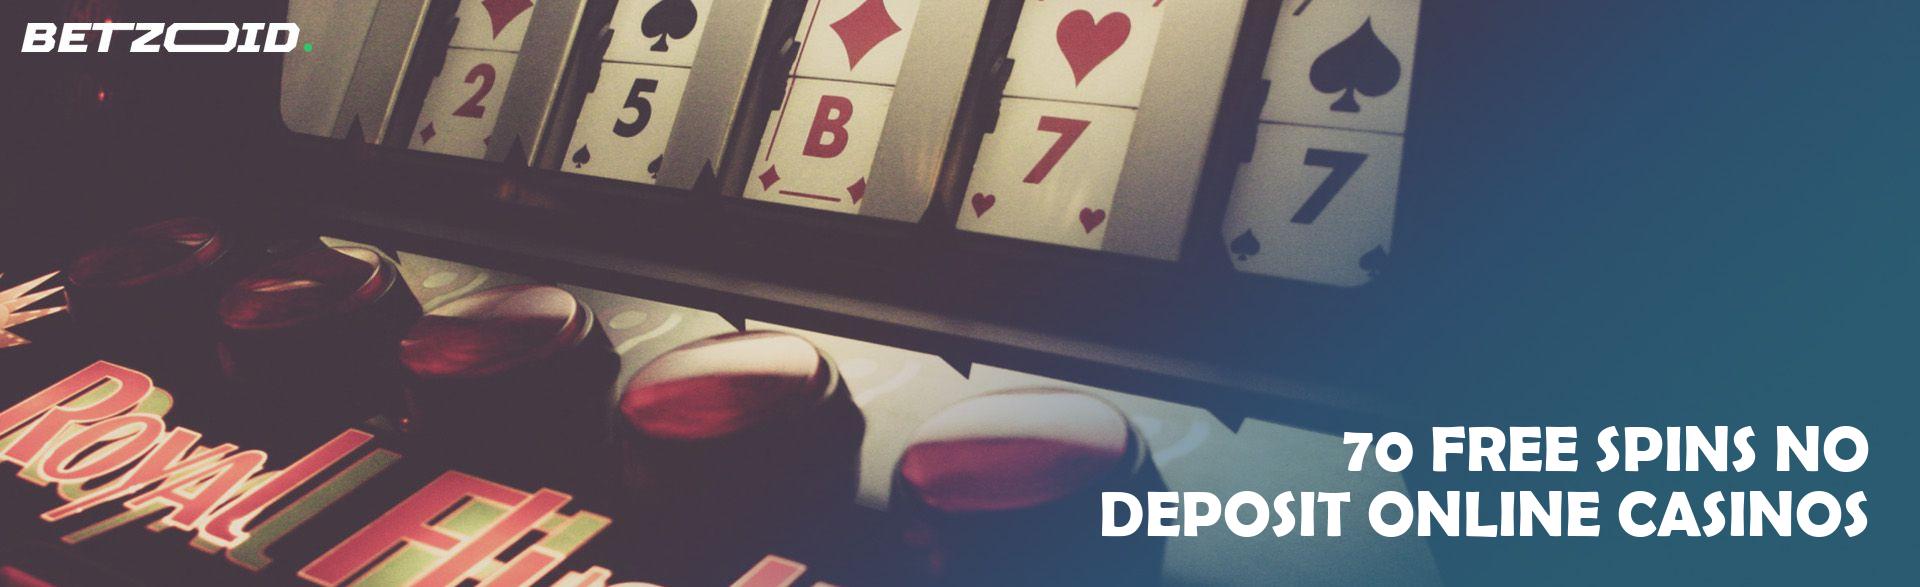 70 Free Spins No Deposit Online Casinos.